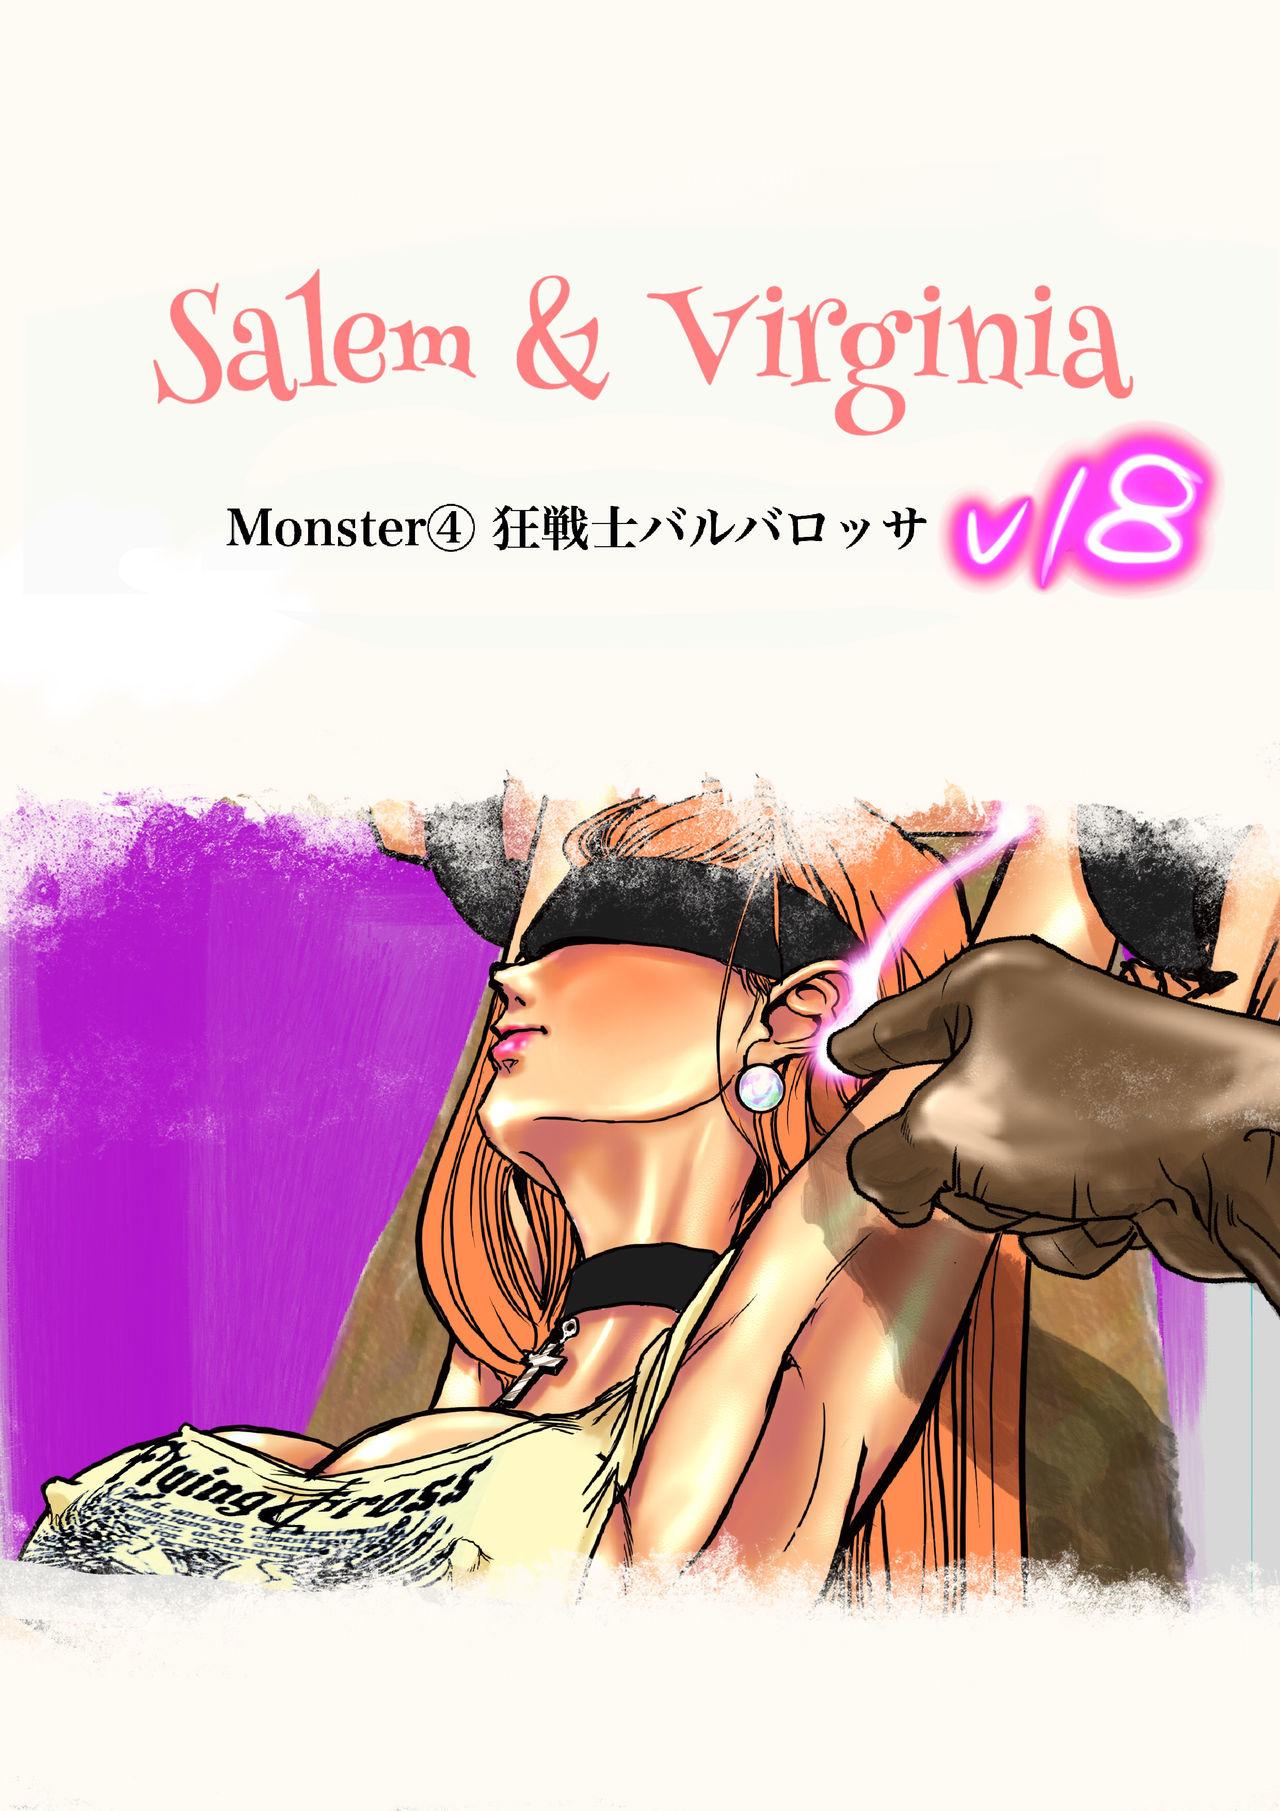 Salem & Virginia 134